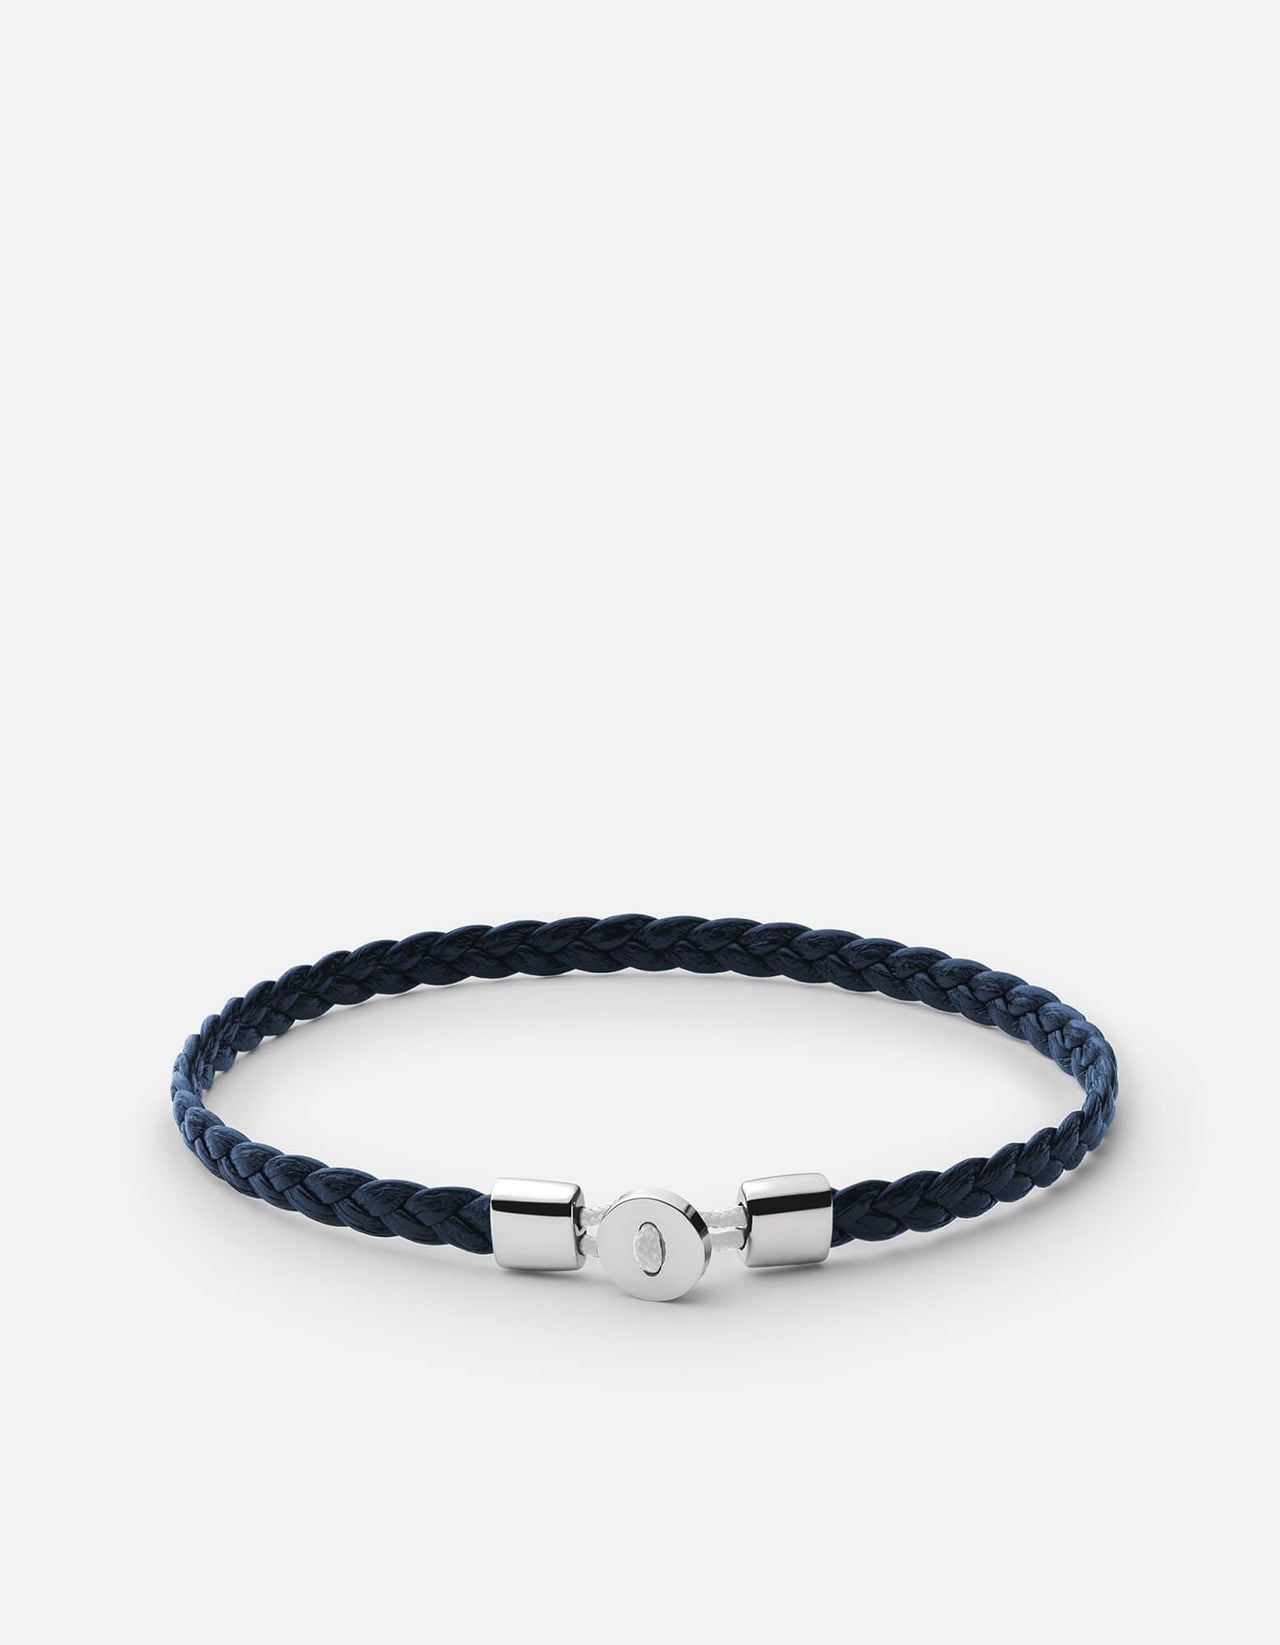 Nexus Braided Leather Bracelet, Sterling Silver | Men's Bracelets | Miansai